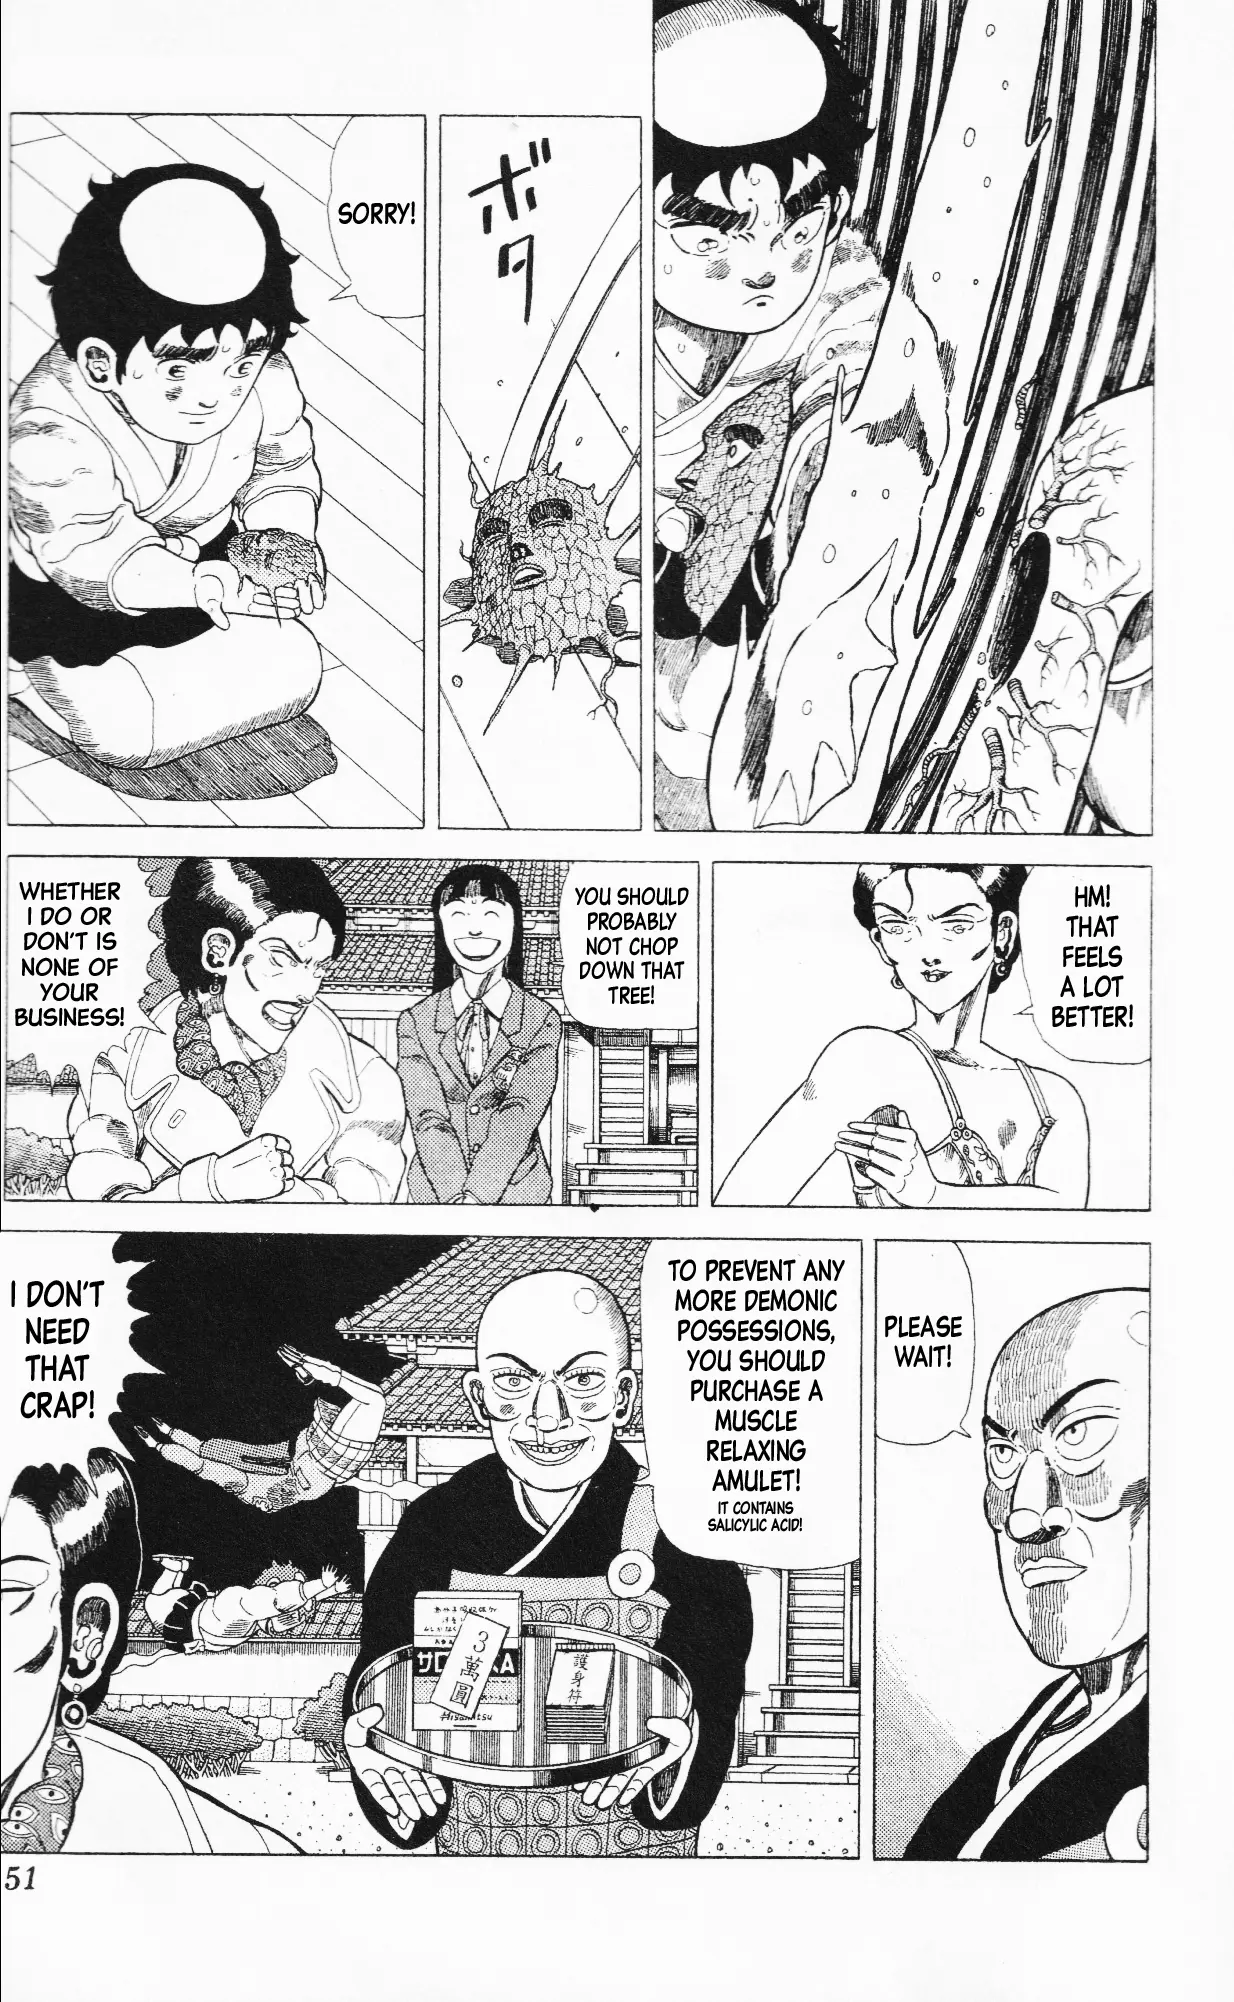 Mizu No Tomodachi Kappaman - 13 page 13-8822b627